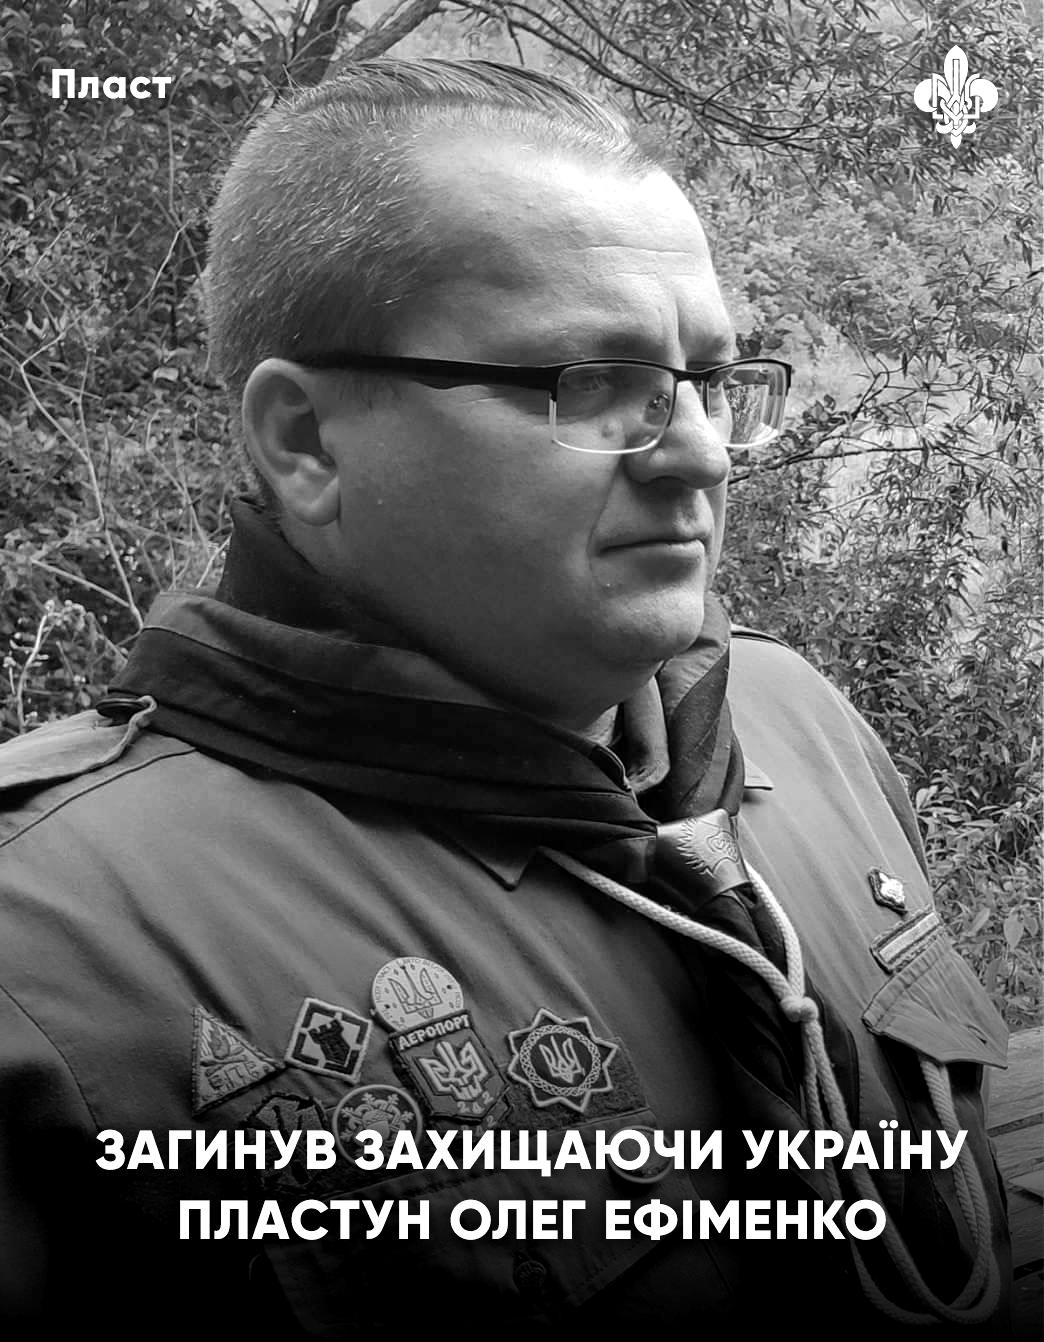 Залишився в Ізюмі підпільником: на Харківщині знайшли тіло активіста “Пласту”